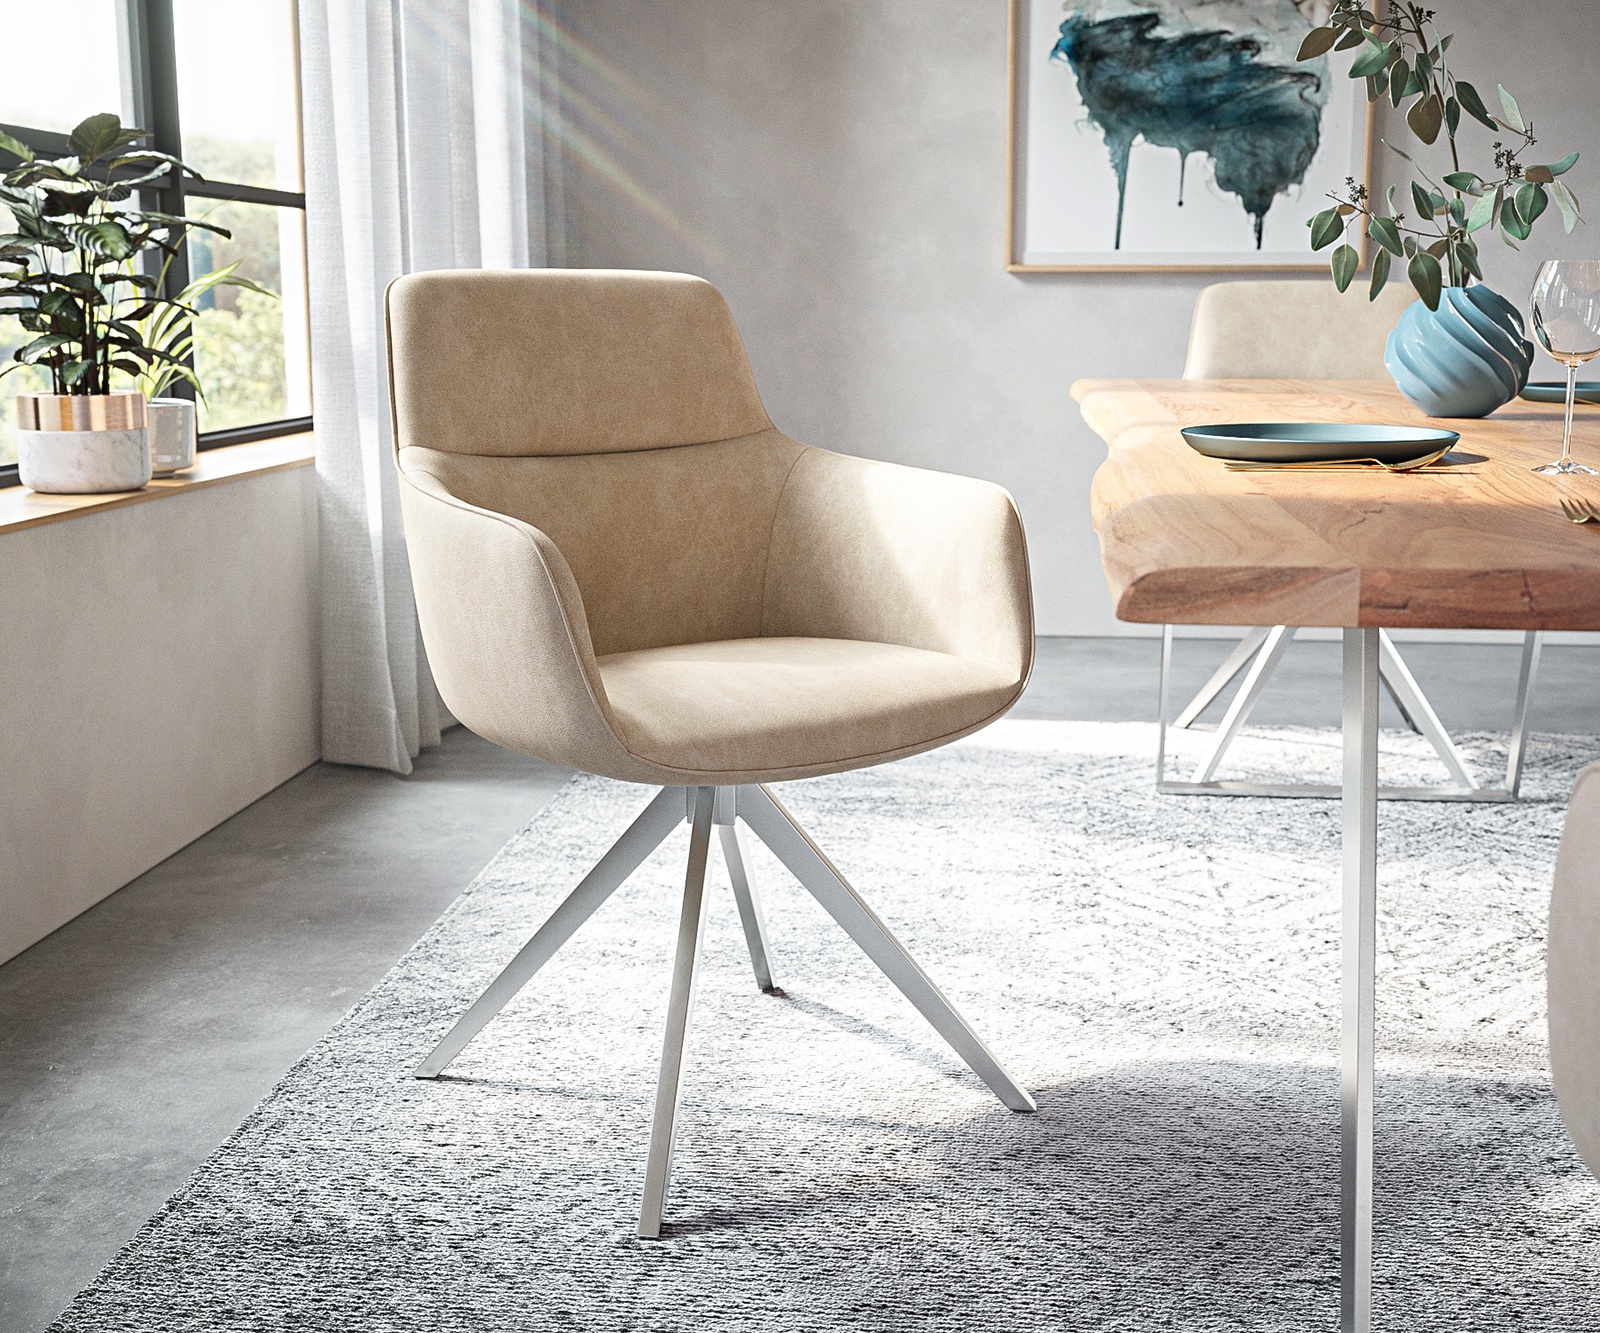 DELIFE Chaise-pivotante Pejo-Flex beige vintage cadre croisé angulaire acier inoxydable pivote sur 180°, Chaises de salle à manger